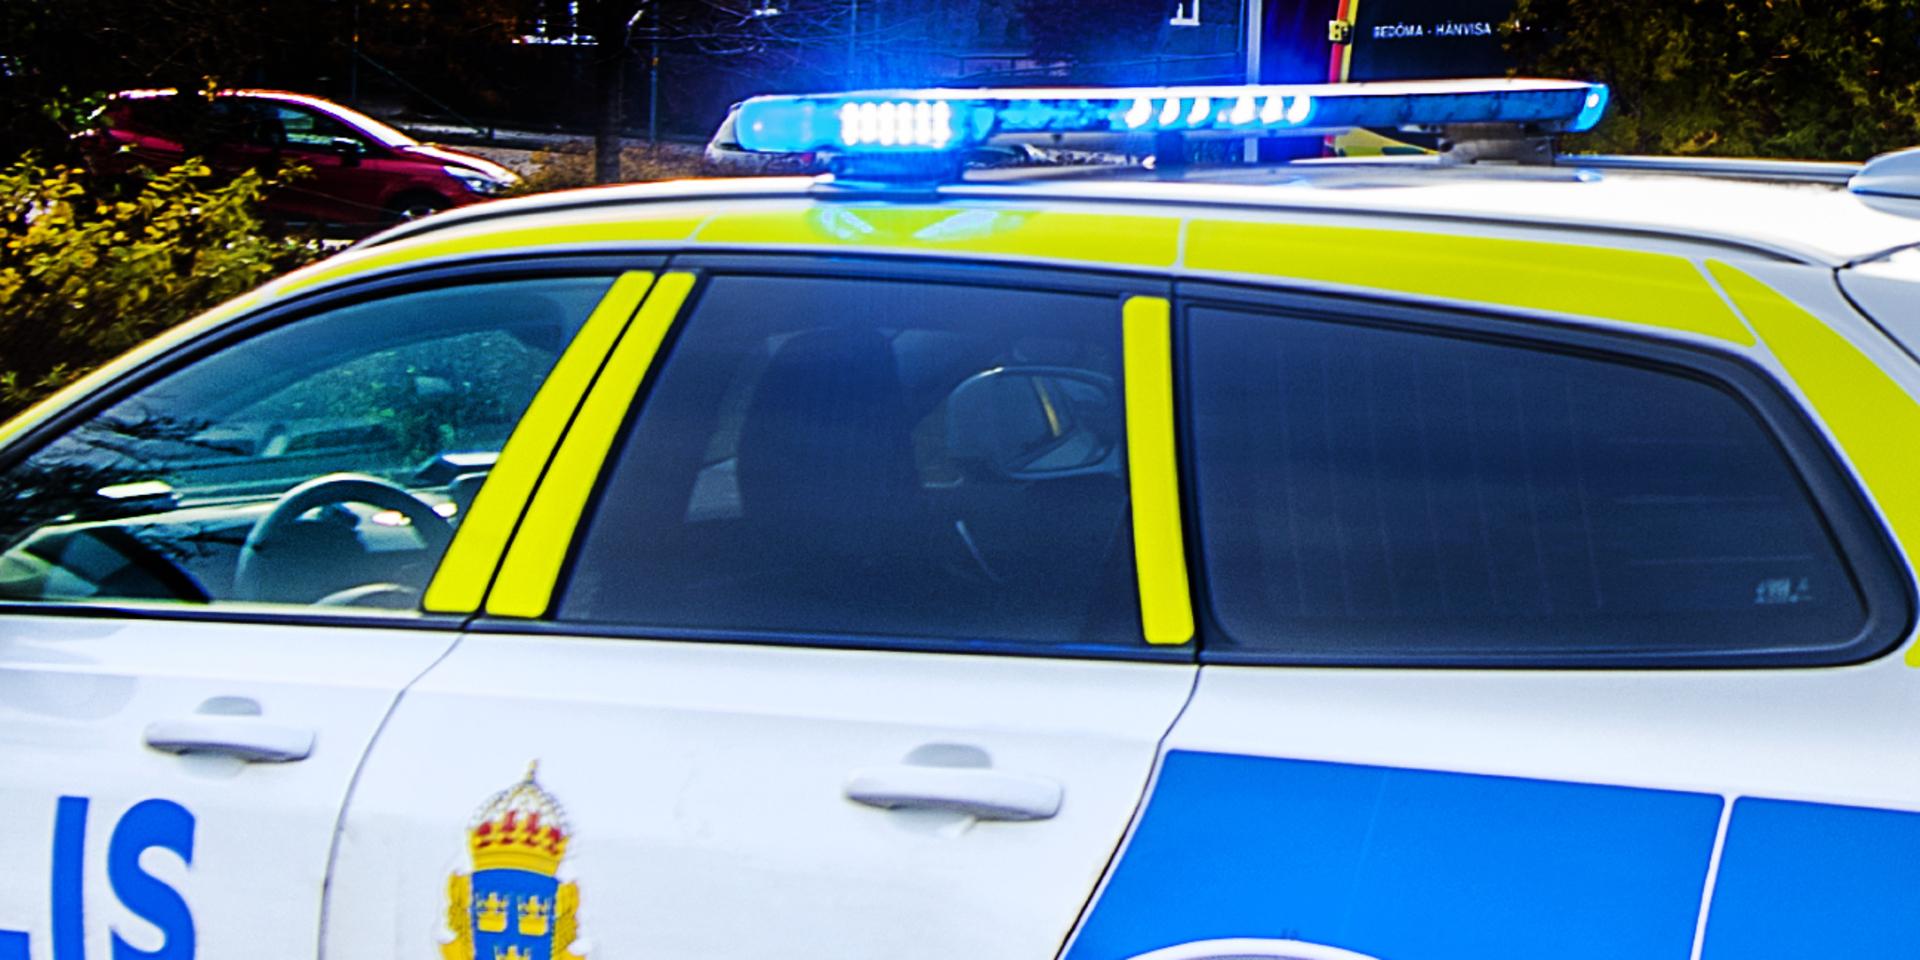 På tisdagen larmades polisen till en restaurang i Mölndals centrum där en misstänkt misshandel ägt rum.